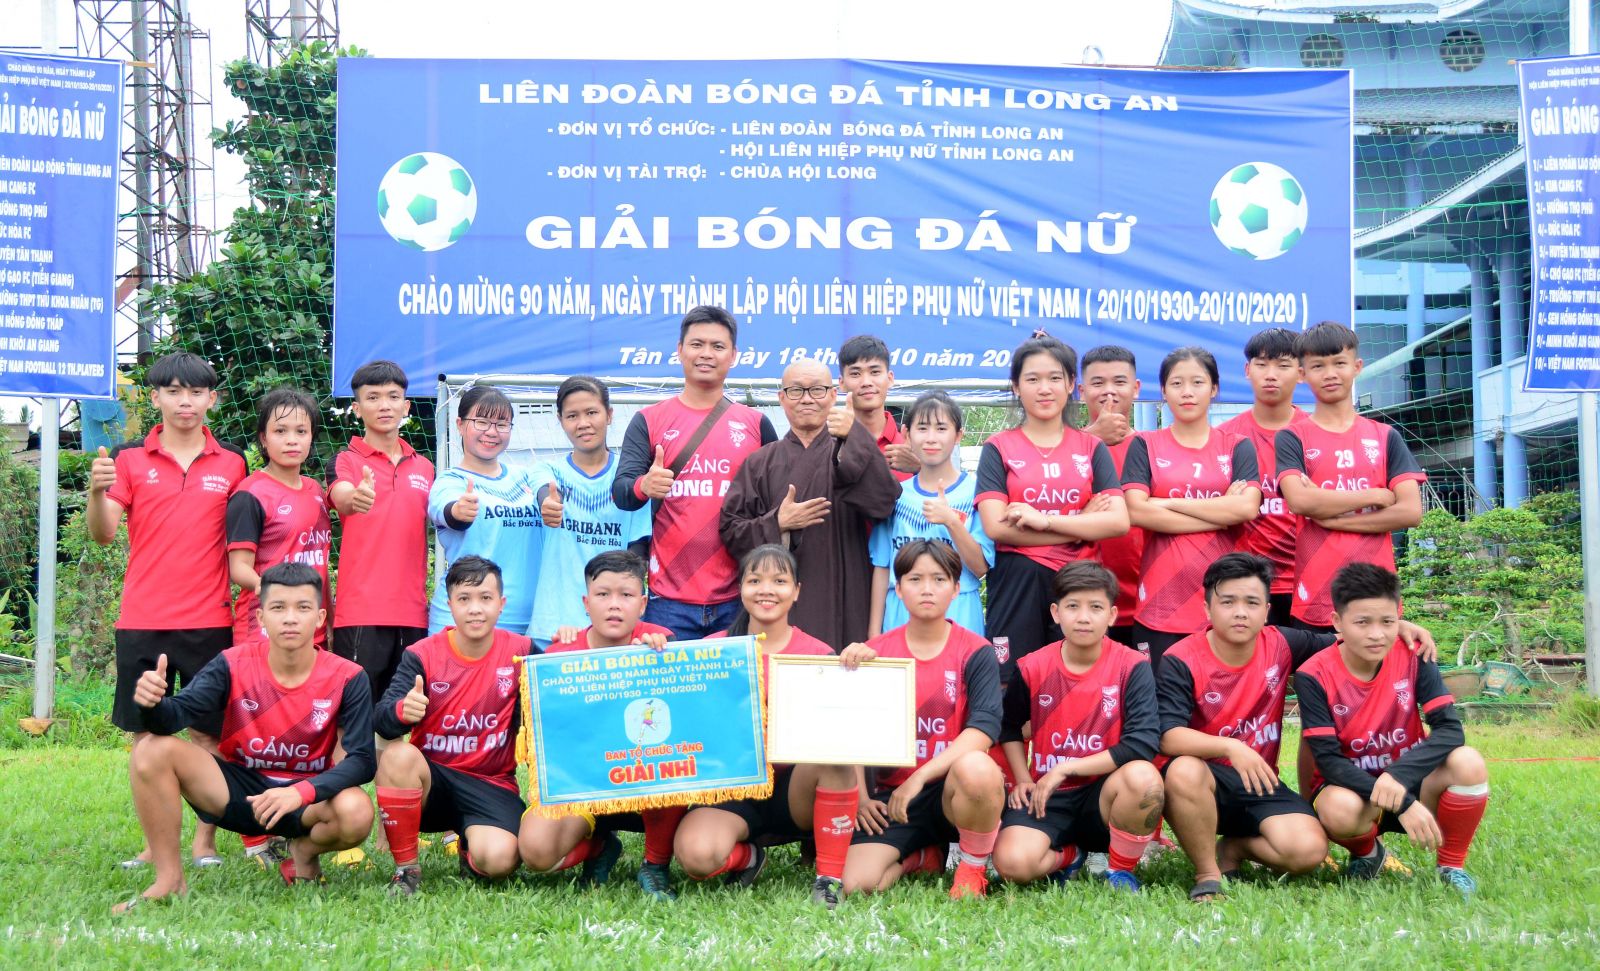 Sân bóng chùa Hội Long là địa điểm tổ chức nhiều giải bóng đá phong trào của TP.Tân An